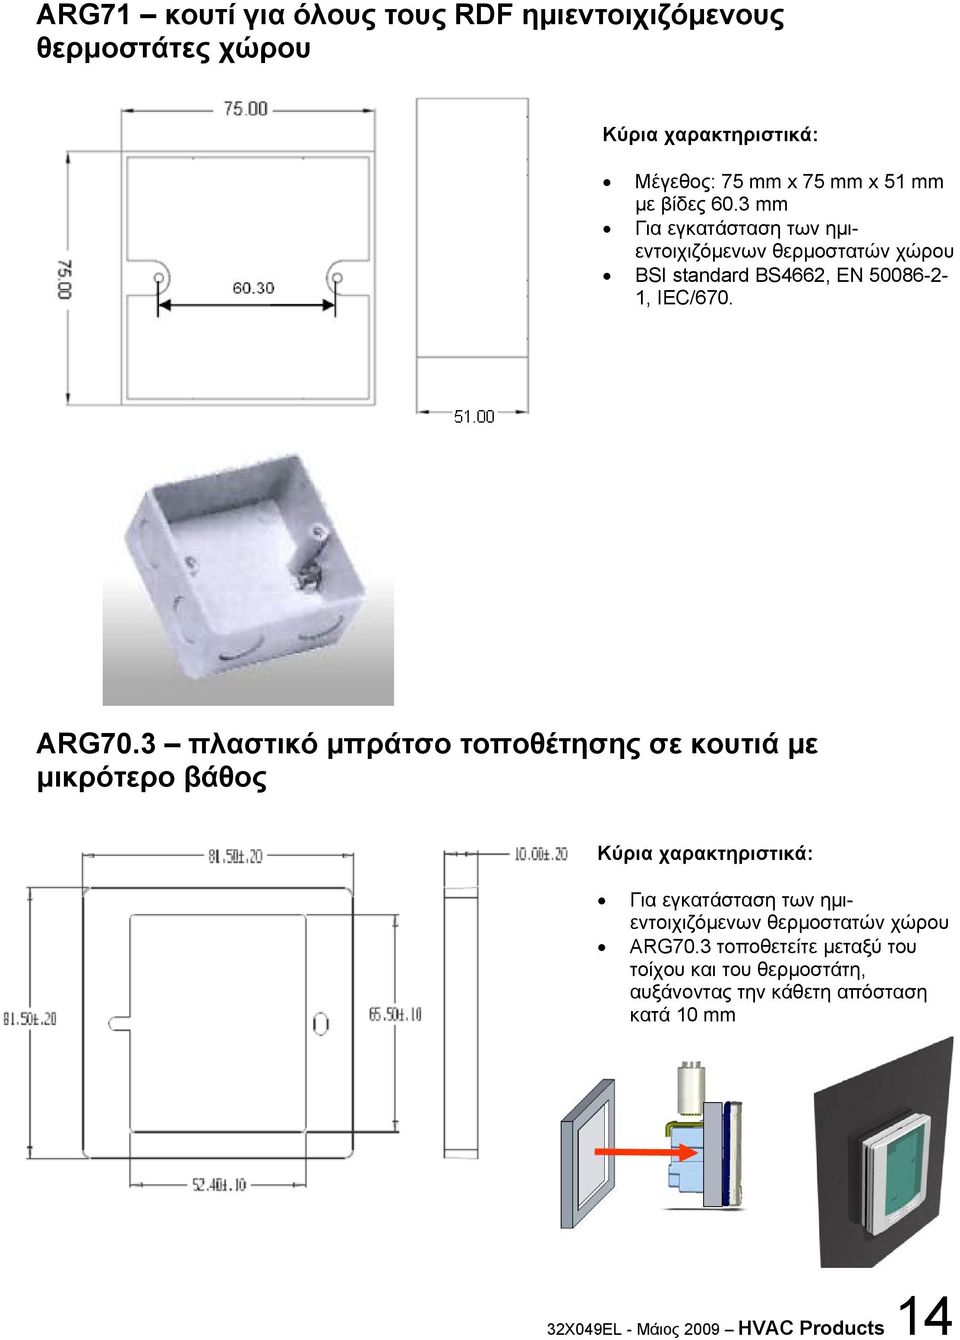 3 πλαστικό μπράτσο τοποθέτησης σε κουτιά με μικρότερο βάθος Κύρια χαρακτηριστικά: Για εγκατάσταση των ημιεντοιχιζόμενων